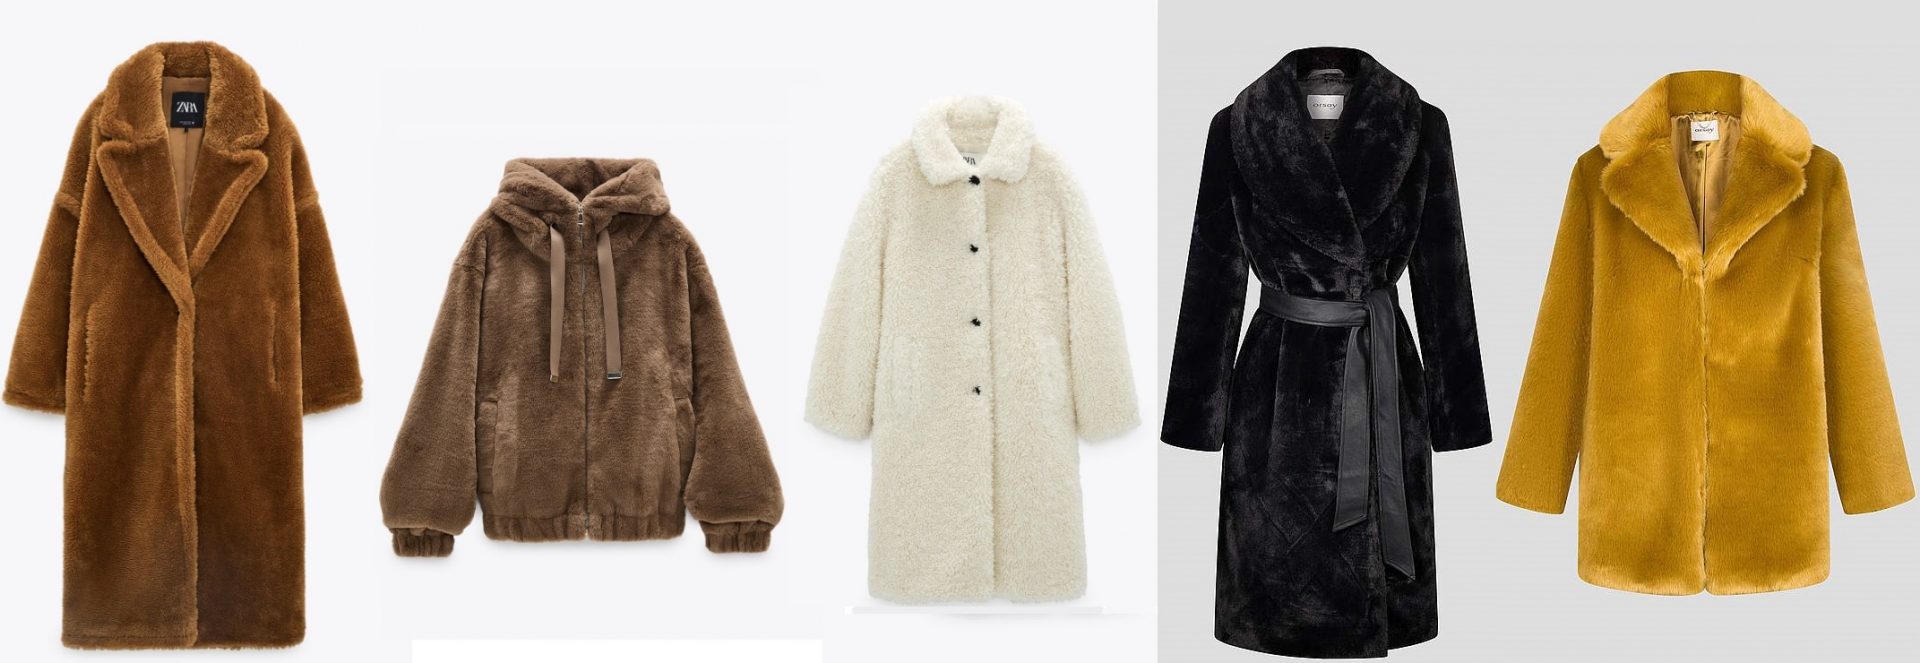 szőrme, divat, táska, kabát, jegyzetfüzet, h&m, asos, fashion winter fashion